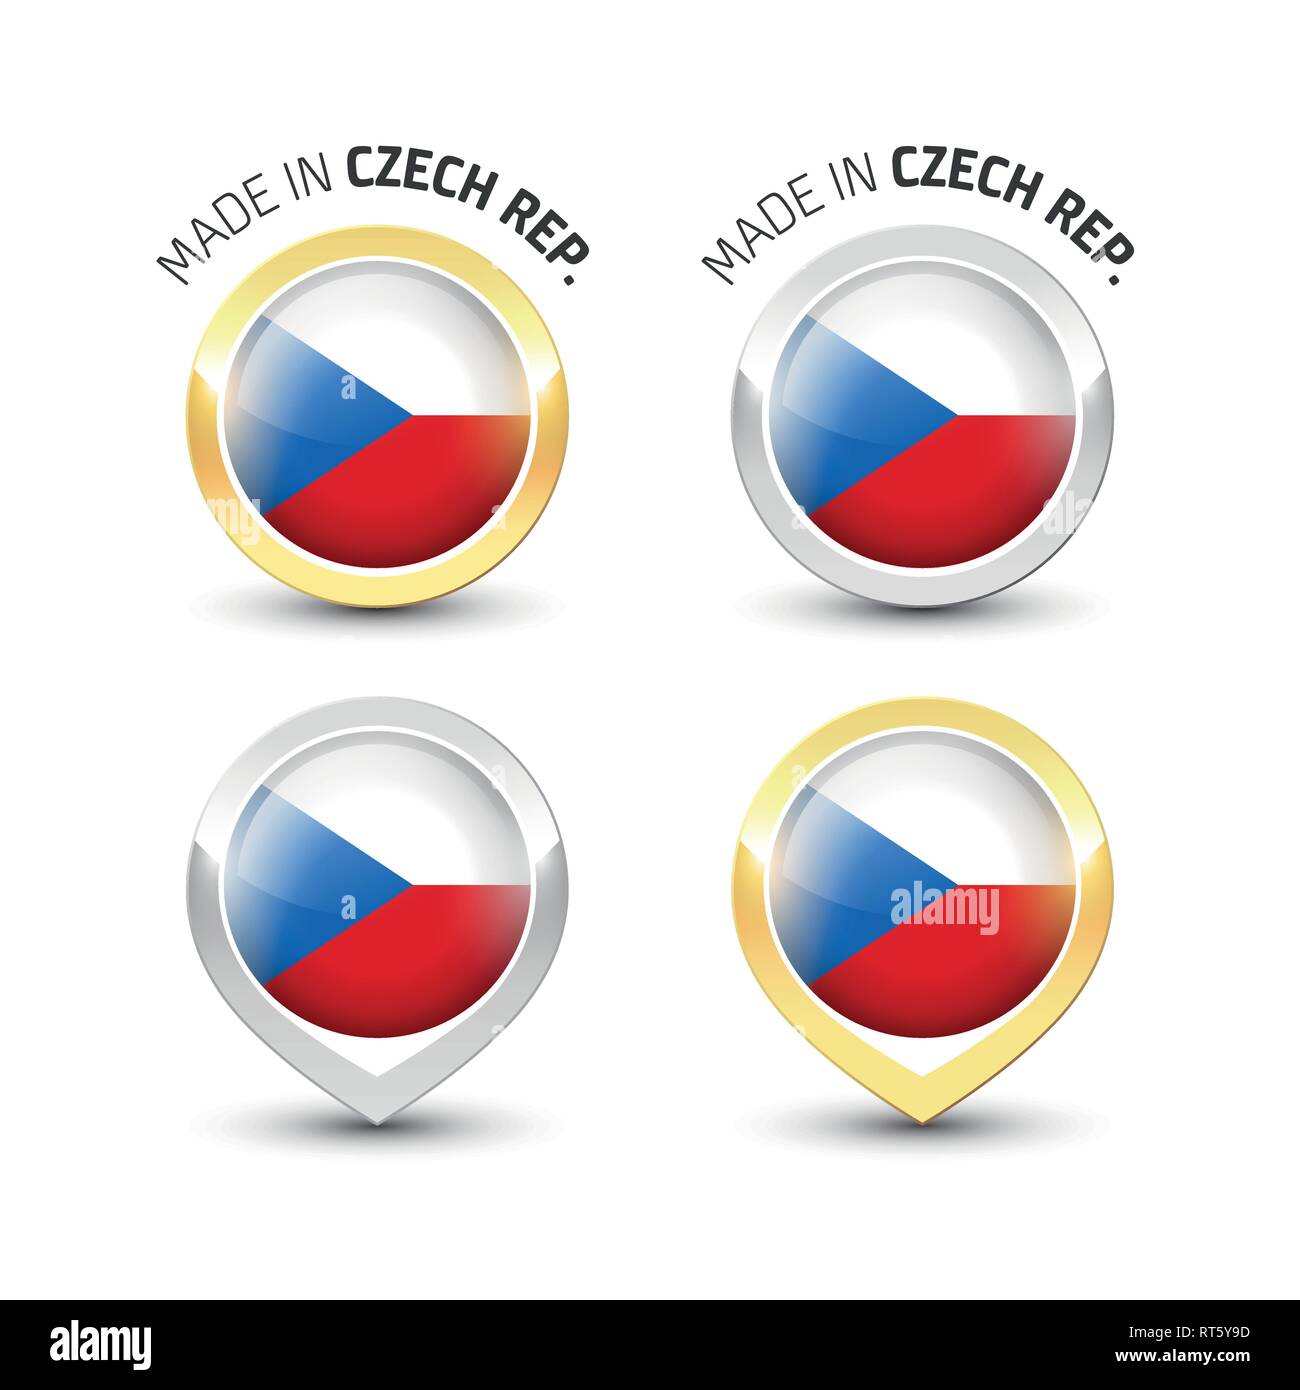 Realizzato in Repubblica ceca - etichetta di garanzia con la bandiera Ceca all'interno del turno oro e argento icone. Illustrazione Vettoriale